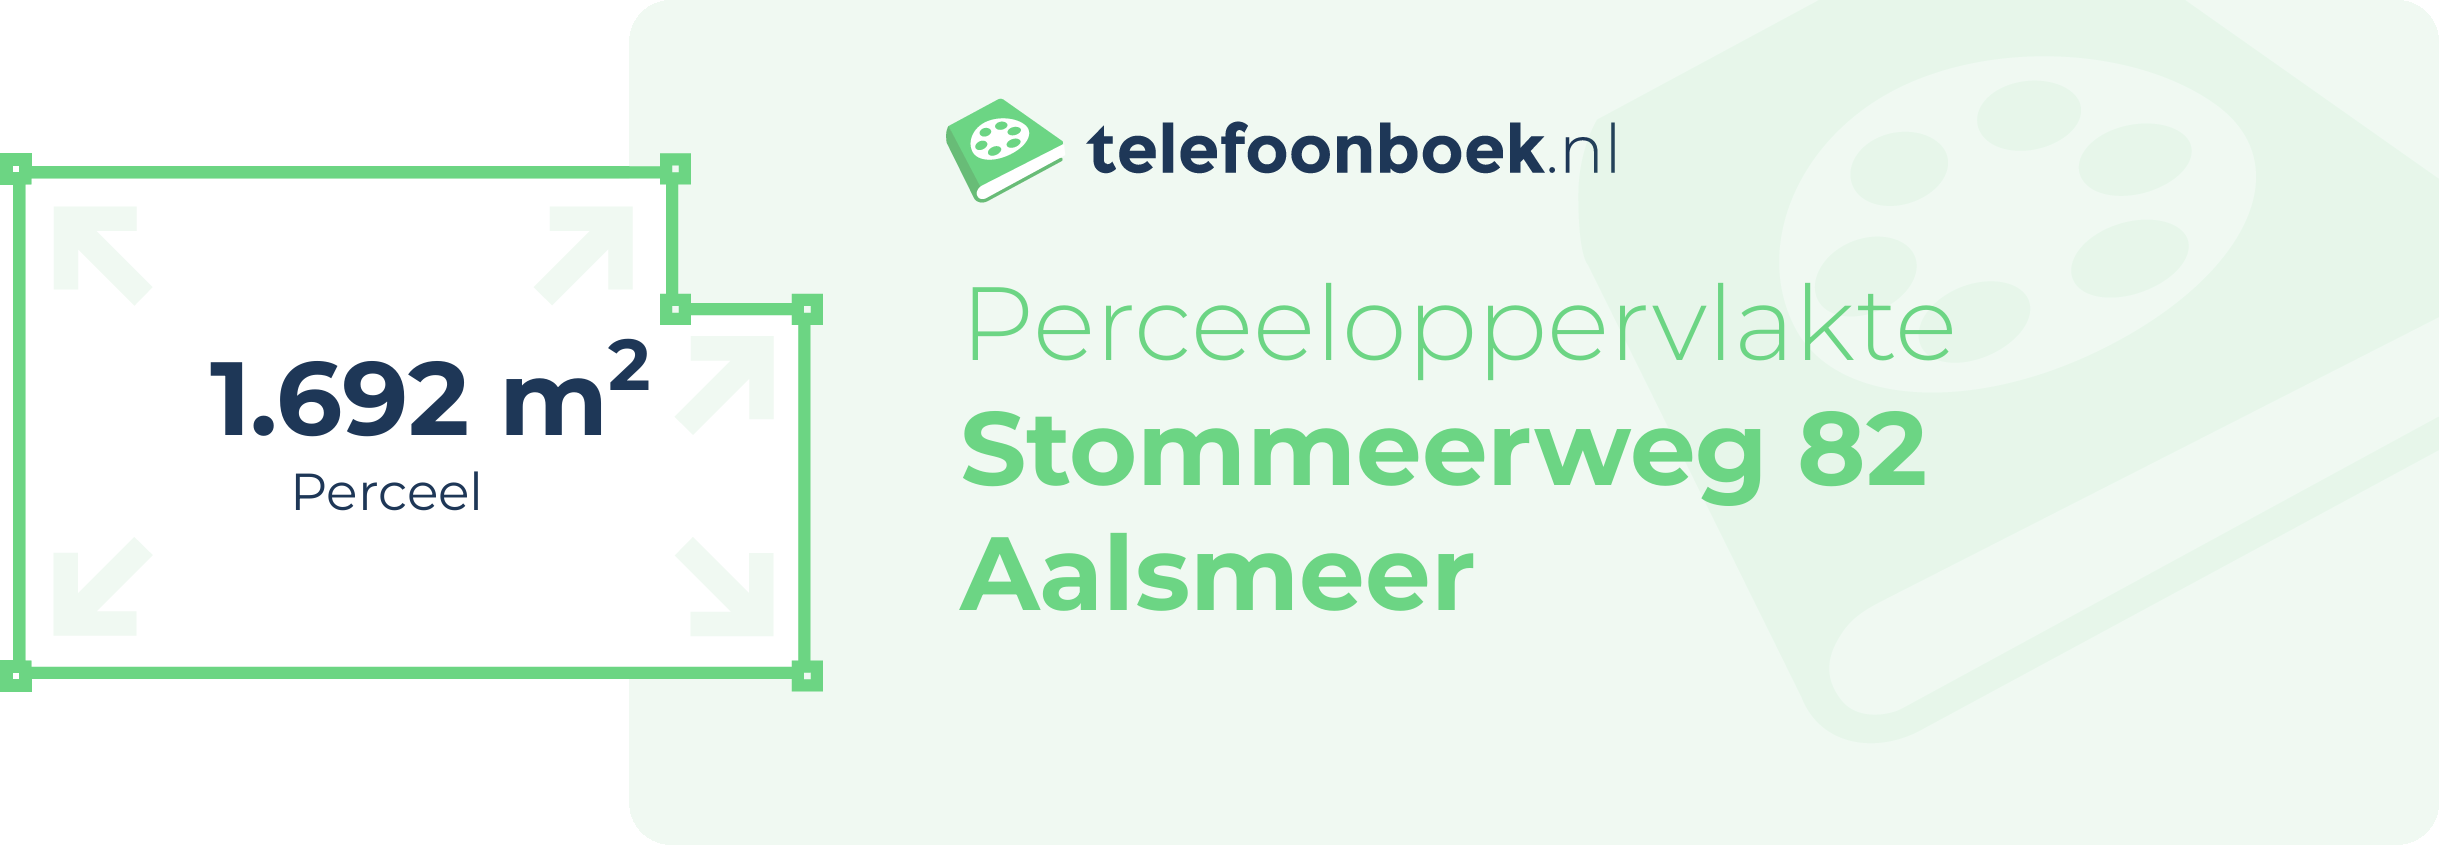 Perceeloppervlakte Stommeerweg 82 Aalsmeer